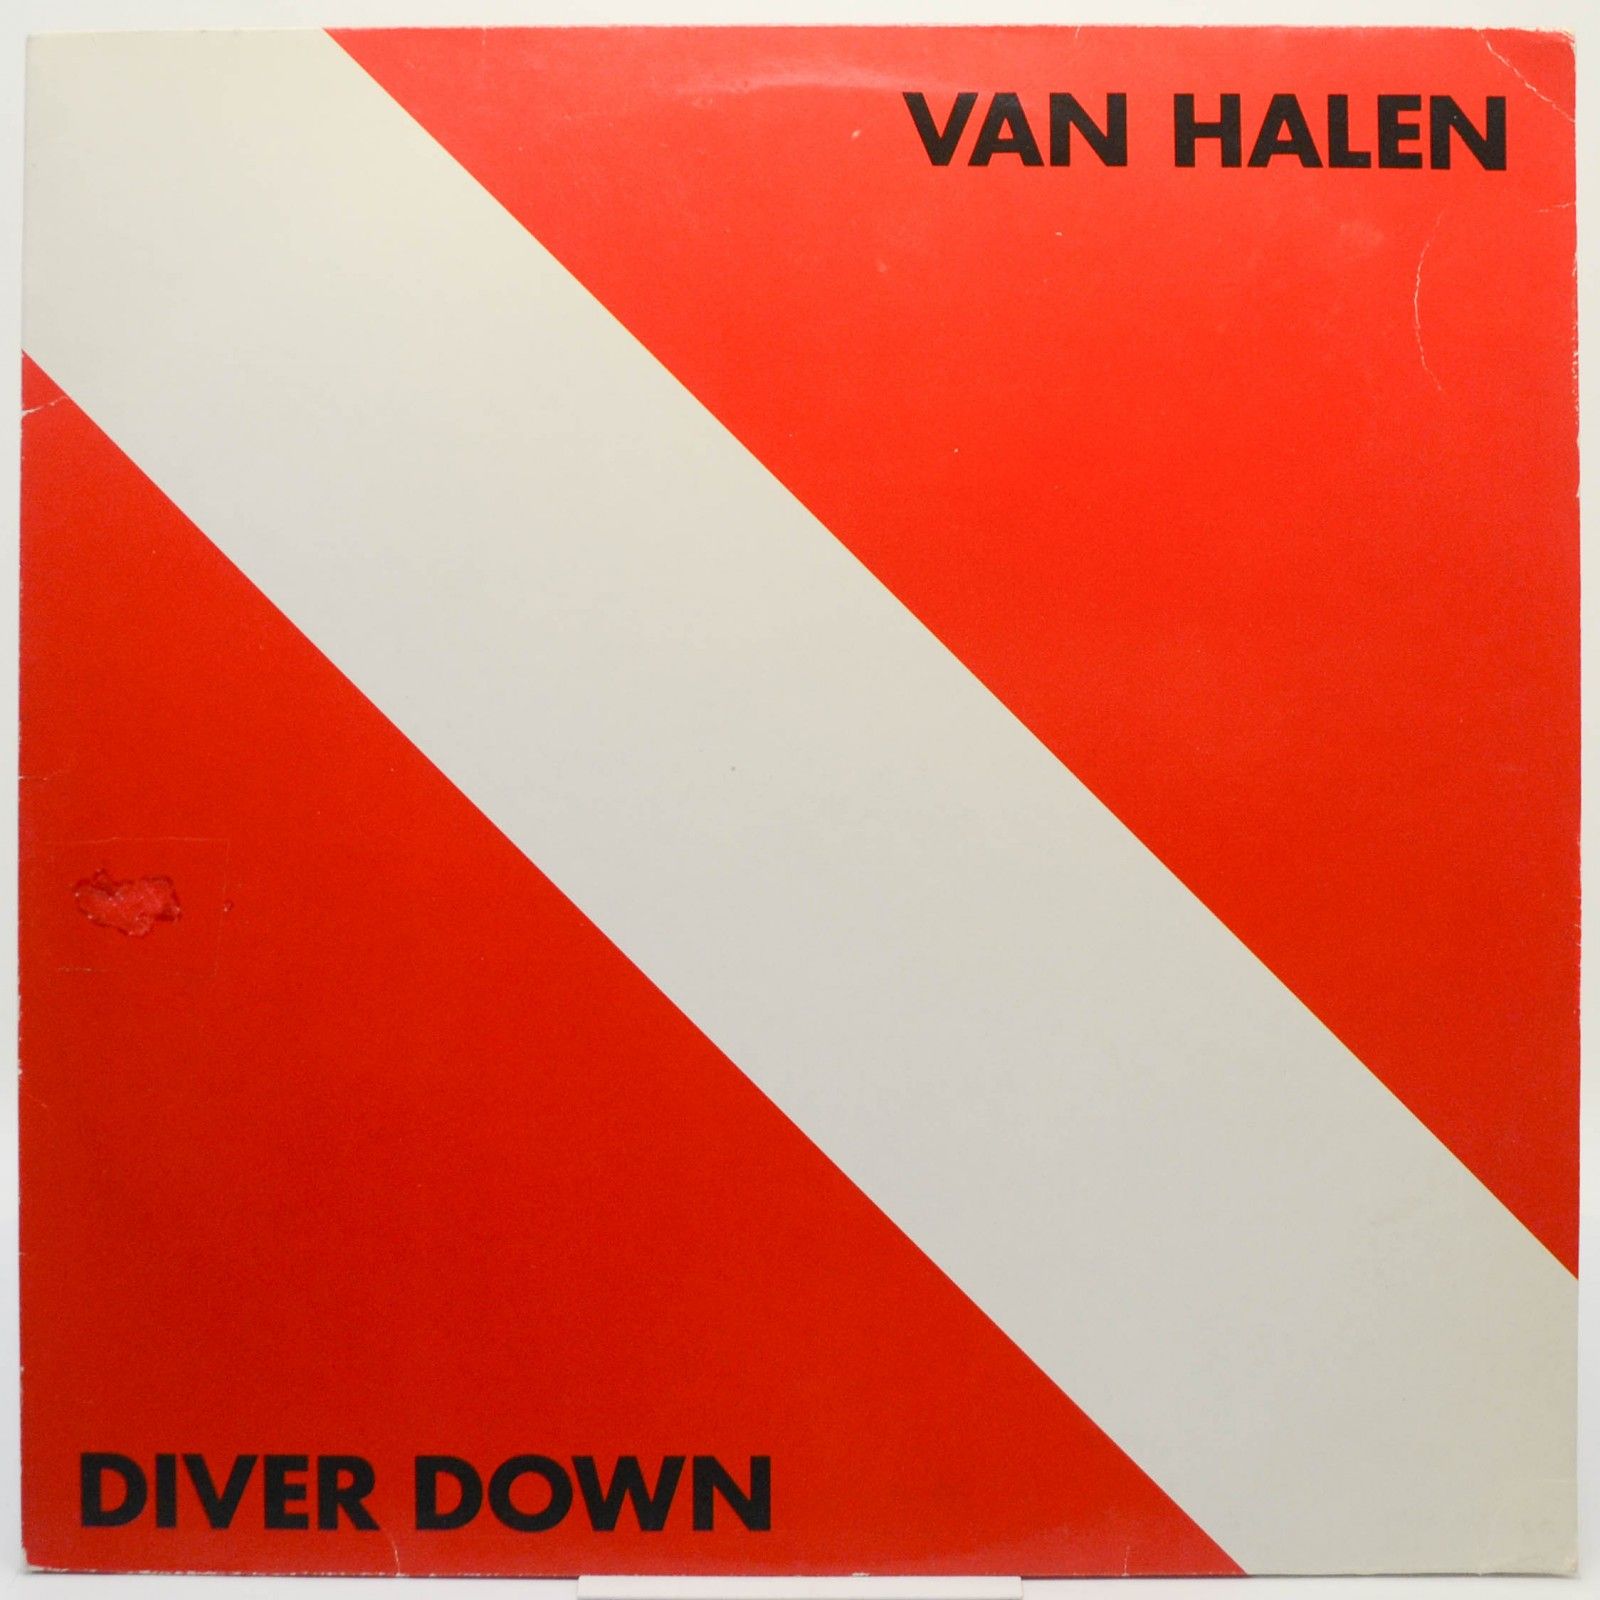 Van Halen — Diver Down, 1982